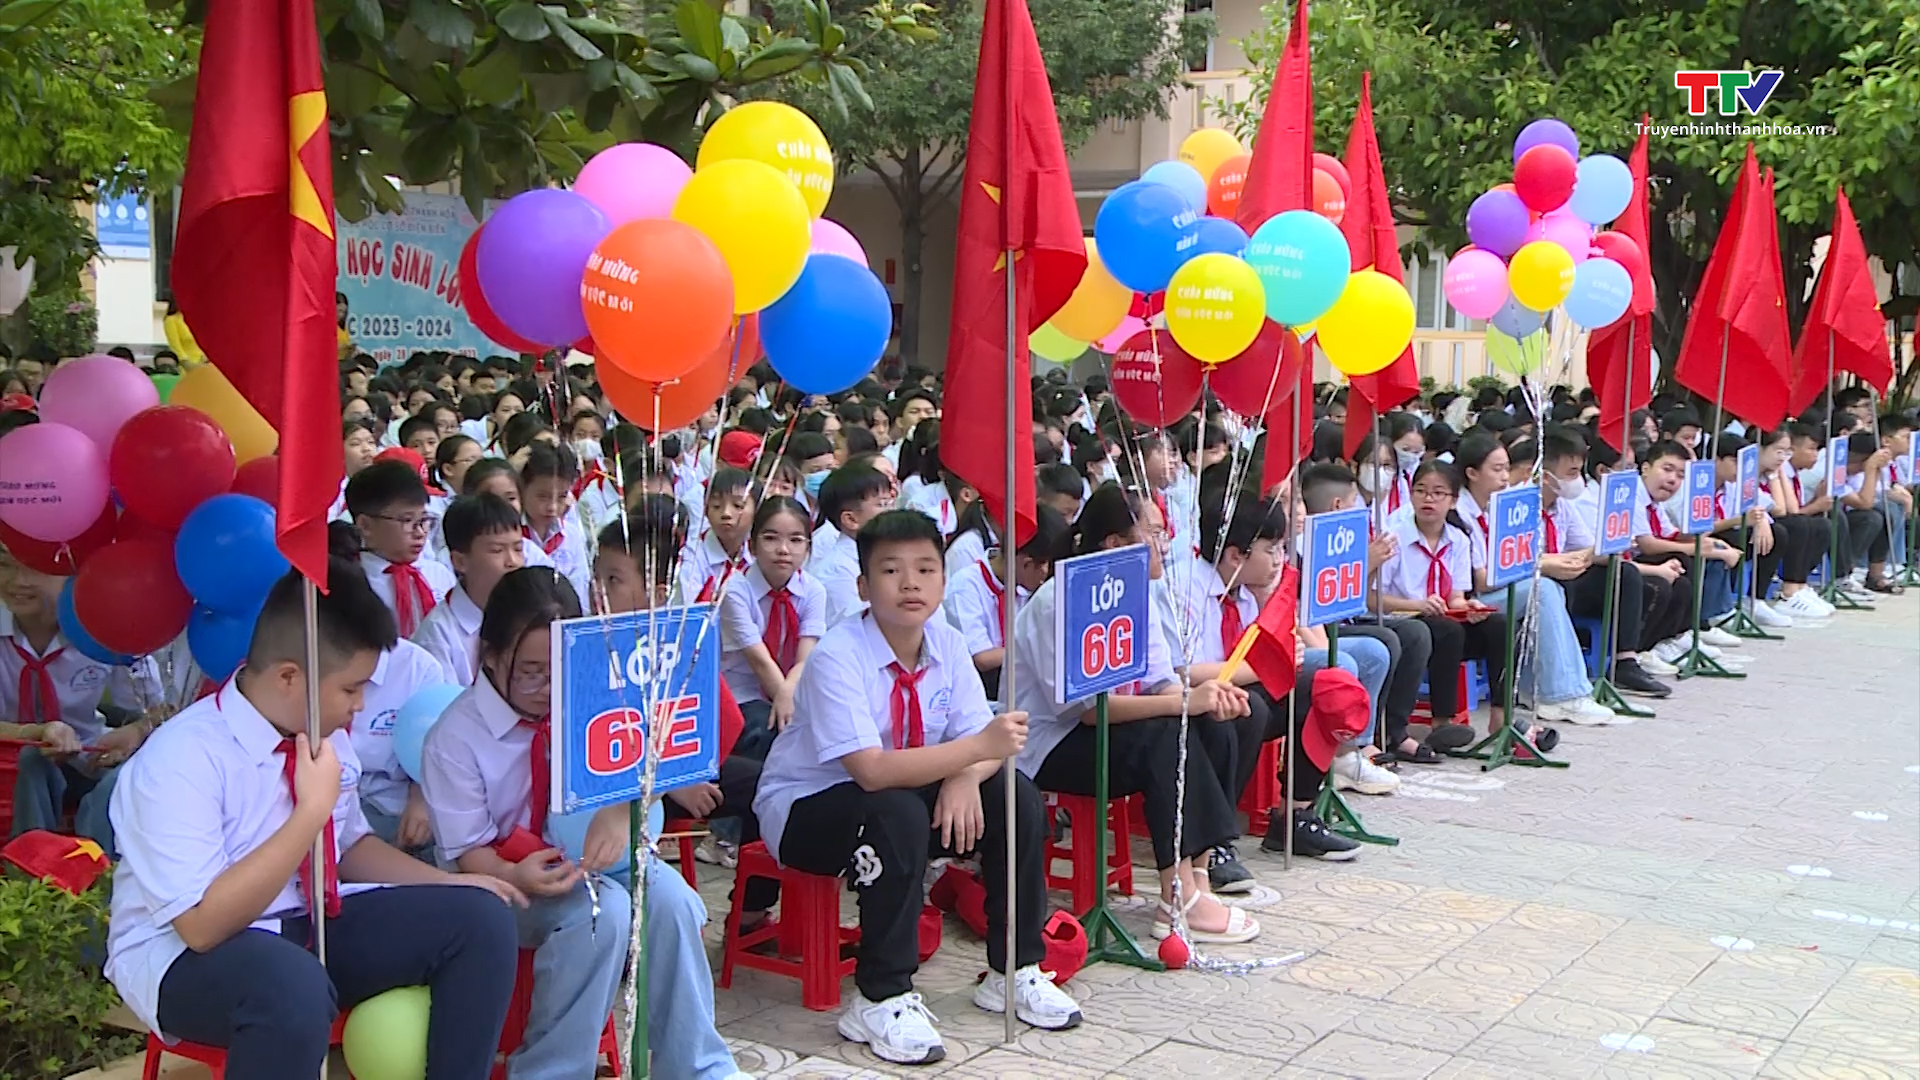 Tin tổng hợp hoạt động chính trị, kinh tế, văn hóa, xã hội trên địa bàn thành phố Thanh Hóa từ 31/8 - 6/9 - Ảnh 3.